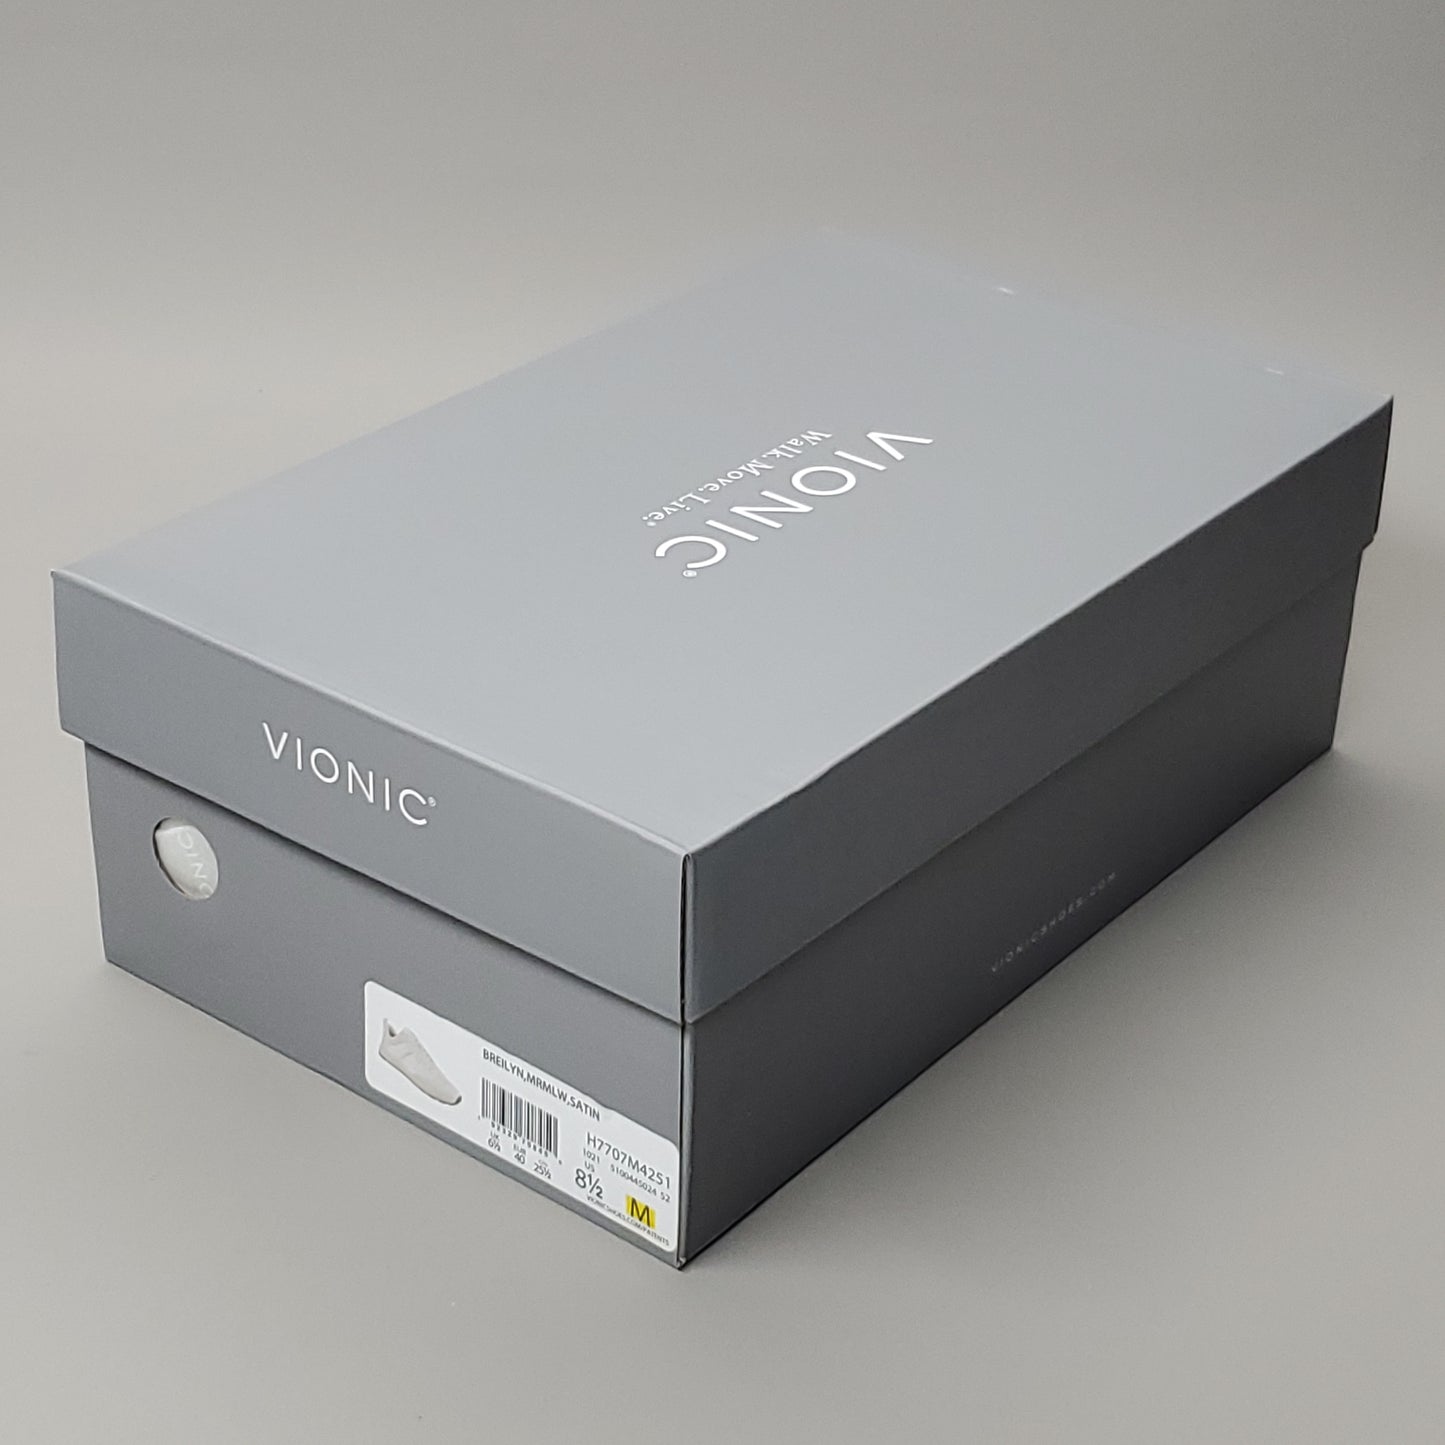 VIONIC Breilyn Satin Sneaker Shoe Women's Sz 8.5 M Beige/White (New)